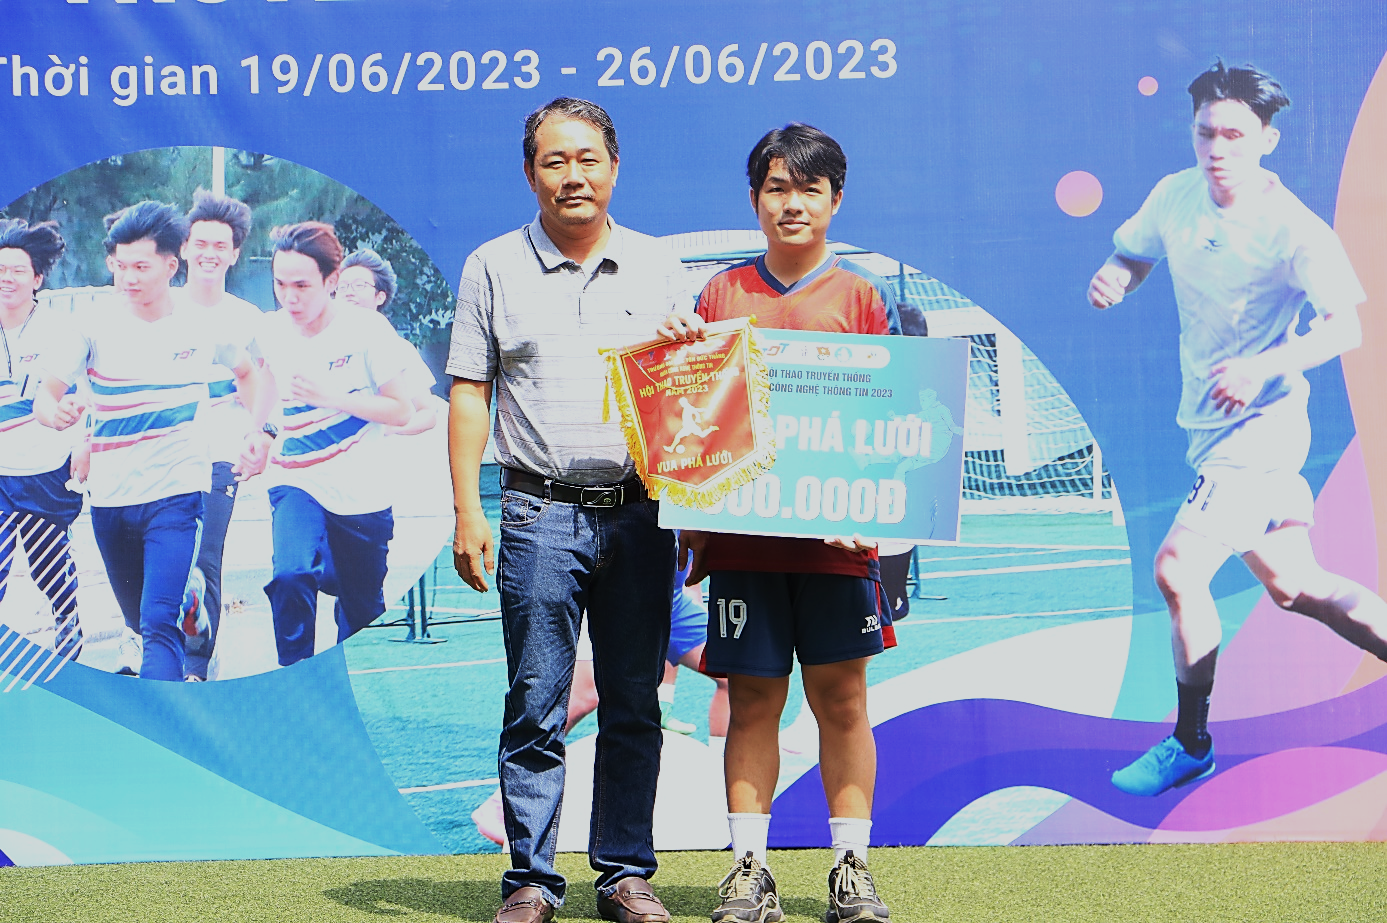 Thầy Lê Viết Thanh trao giải Vua phá lưới cho Cầu thủ Quang Trung